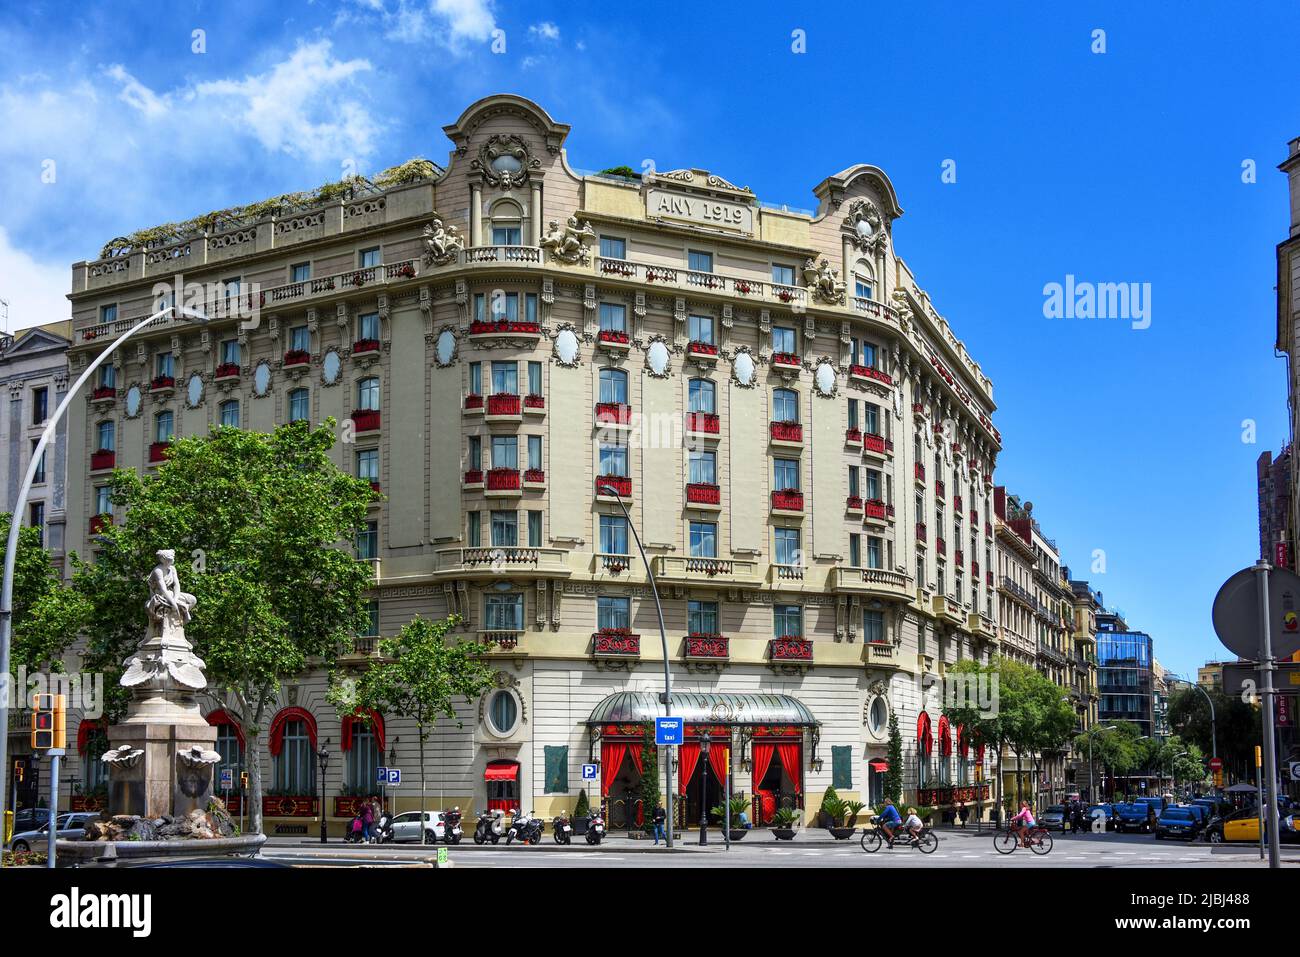 Barcelona, Spanien - 13. Mai 2018: Das El Palace Hotel Barcelona, ein 5-Sterne-Luxushotel an der Gran Via de les Corts Catalanes. Es war früher bekannt als Th Stockfoto